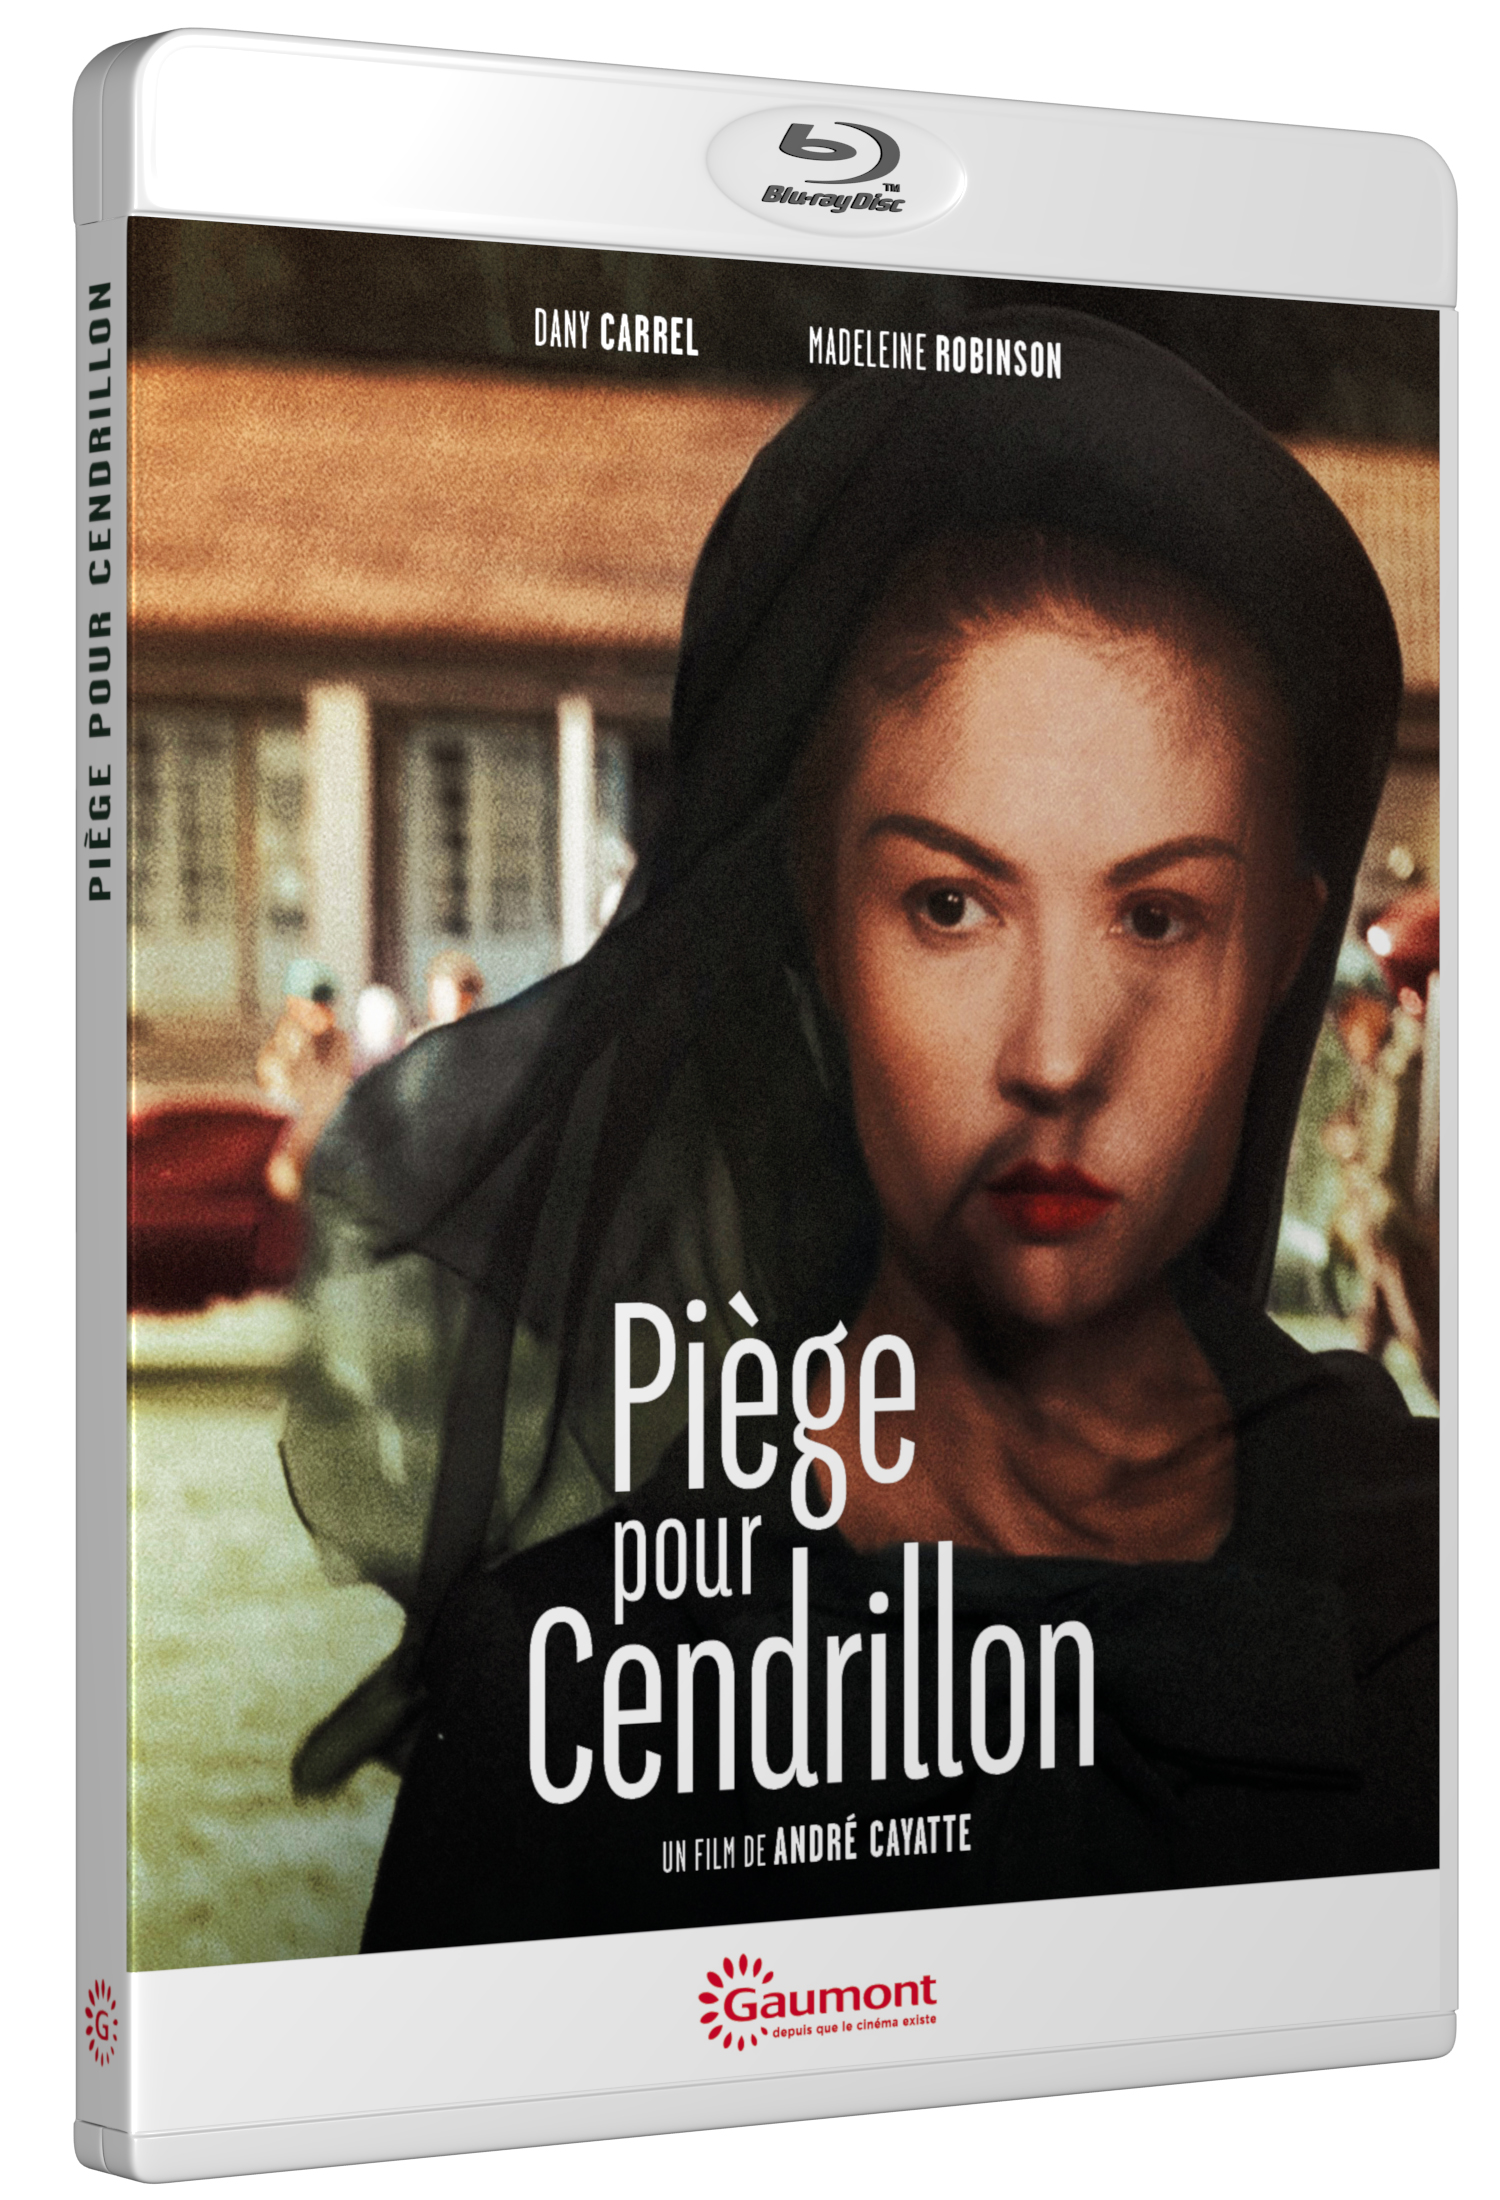 PIEGE POUR CENDRILLON - BRD